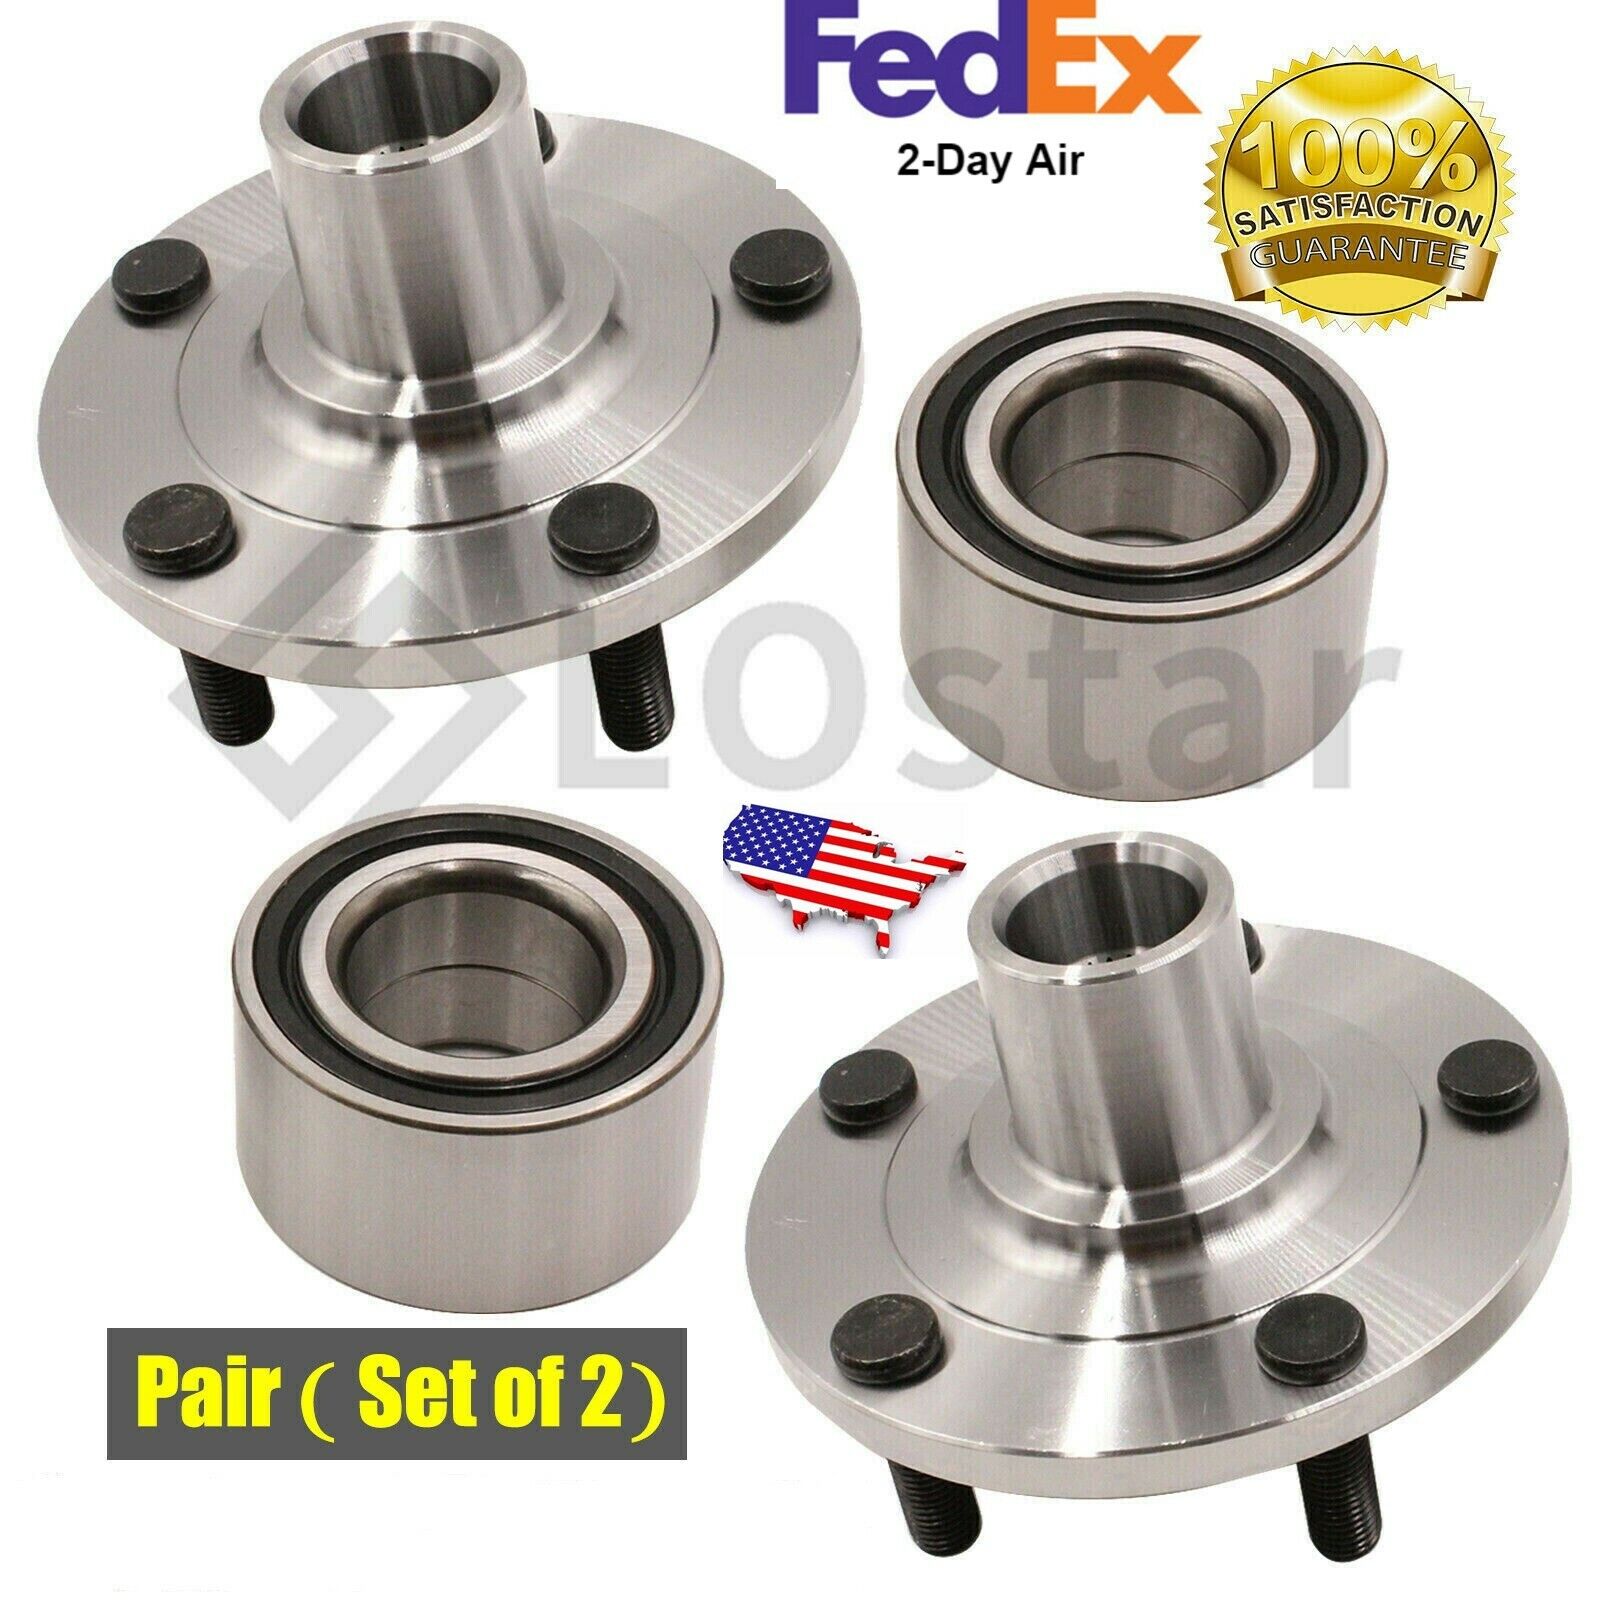 Pair(2) Front Wheel Hub & Bearing Assembly Fits 05-13 Mazda 3  06-10 Mazda 5